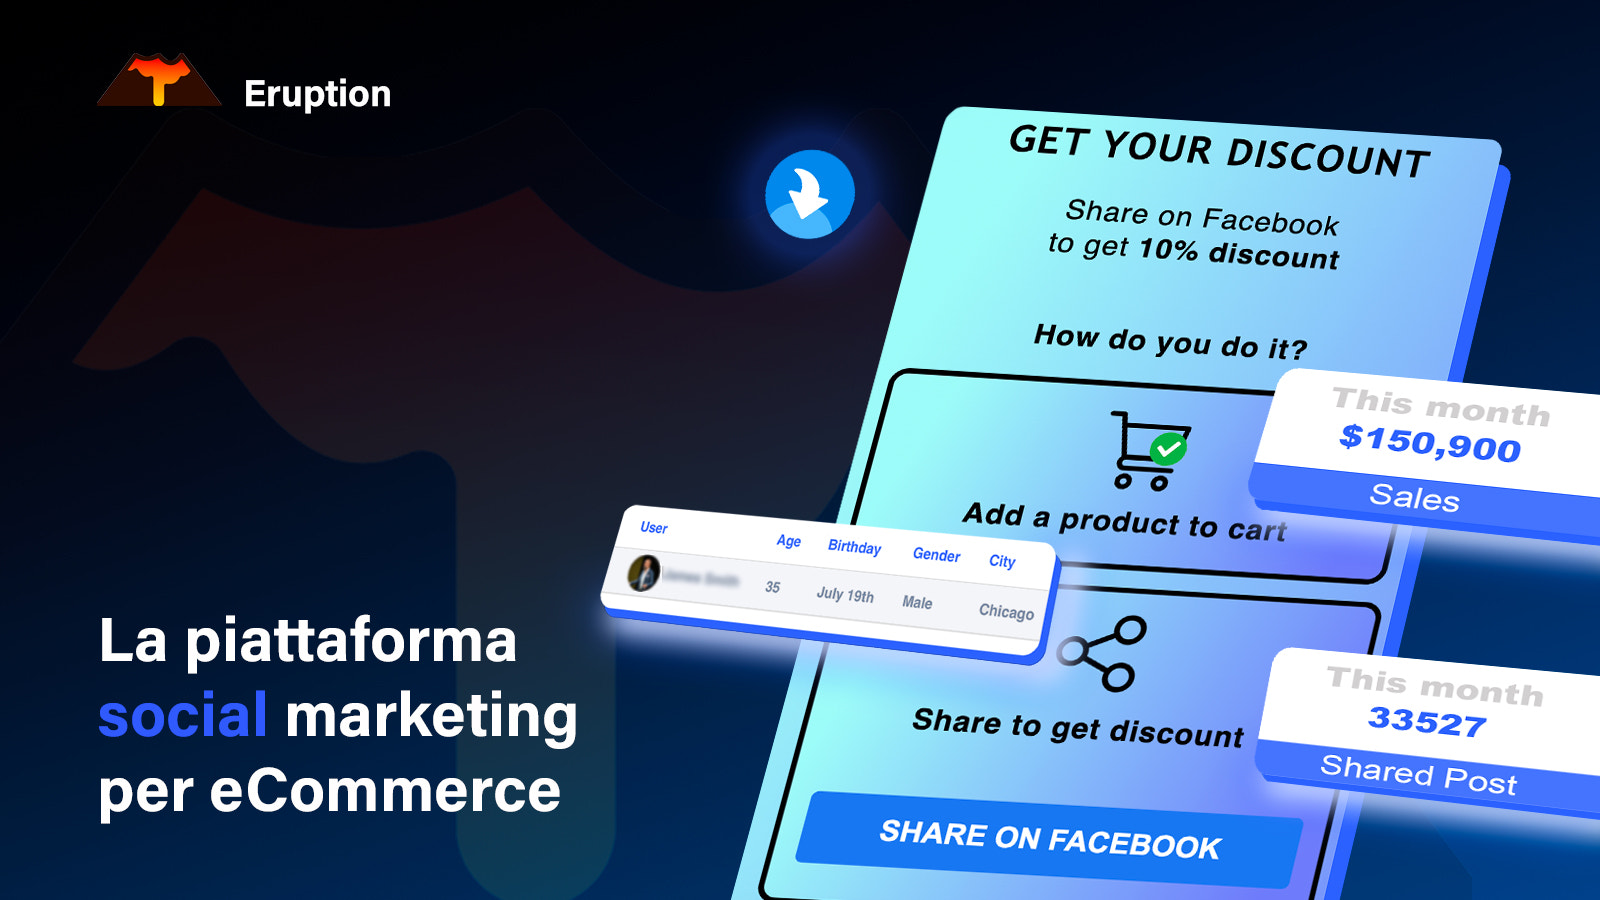 La piattaforma social marketing per eCommerce